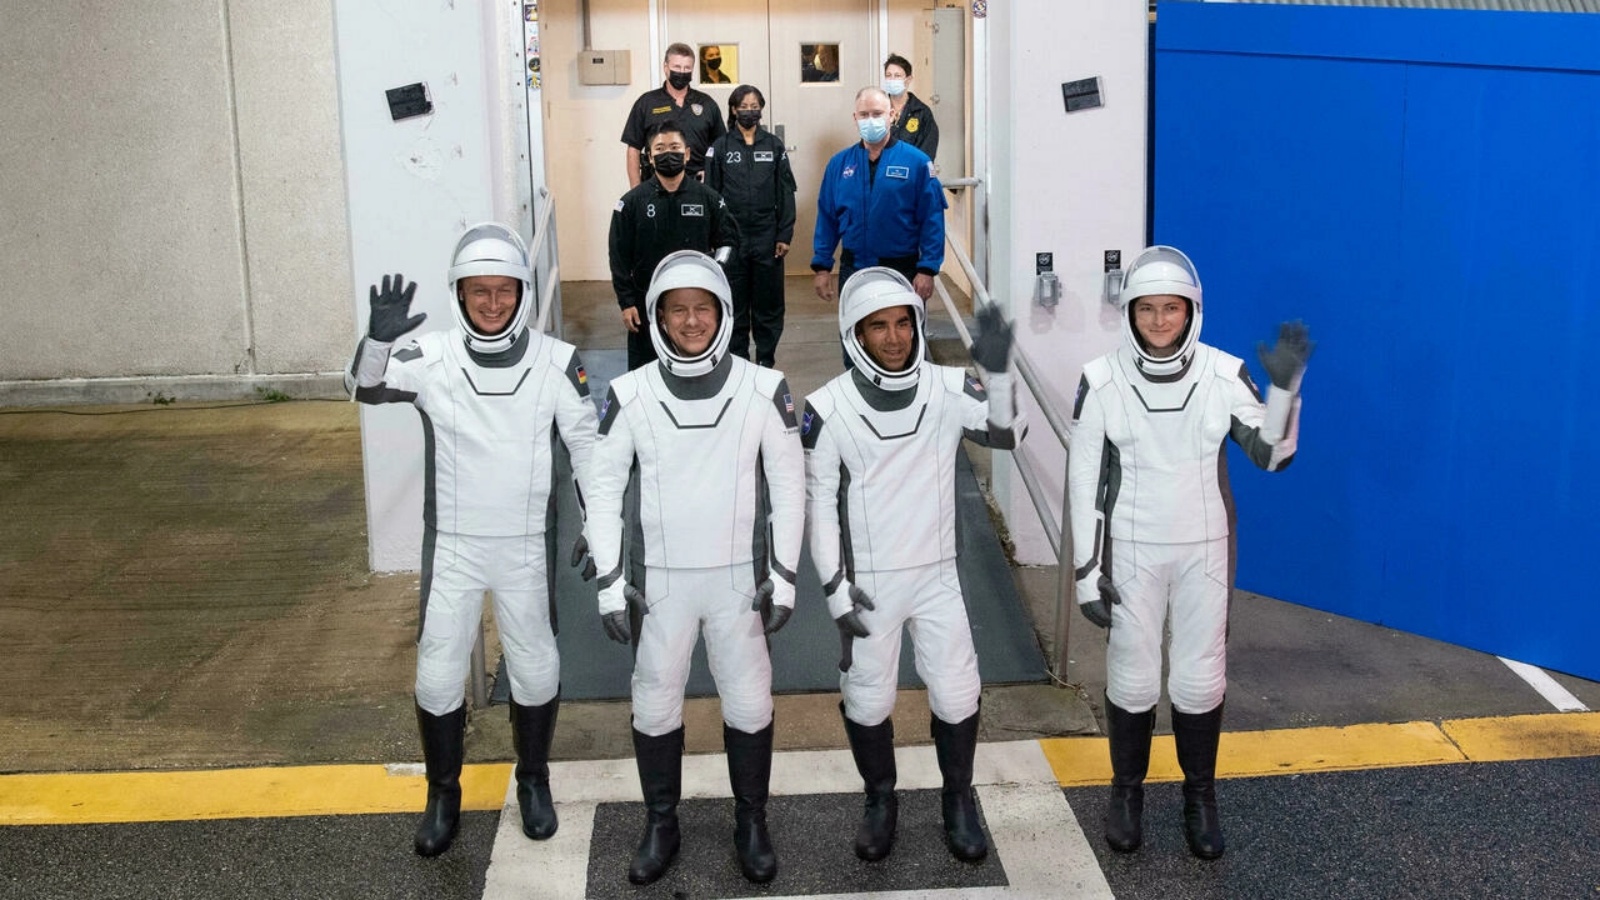 الأميركيون توم مارشبورن (الثاني من اليسار) وراجا شاري (الثاني من اليمين) وكيلا بارون (على اليمين) وكذلك الألماني ماتياس مورير (يسار) من وكالة الفضاء الأوروبية، سيقضون ستة أشهر في الموقع المداري.